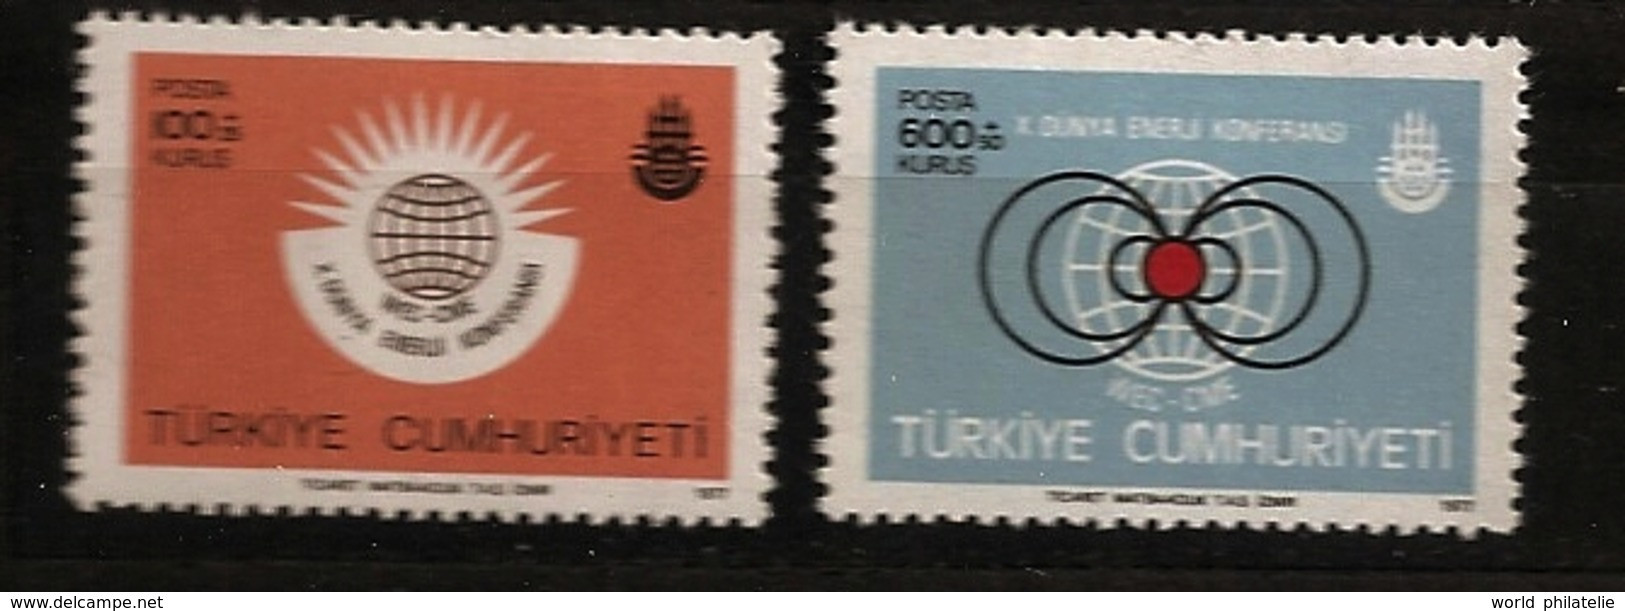 Turquie Türkiye 1977 N° 2198 / 9 ** Energie, Conférence Mondiale, Atome, Nucléaire, Gaz, Pétrole, Charbon, Electricité - Unused Stamps